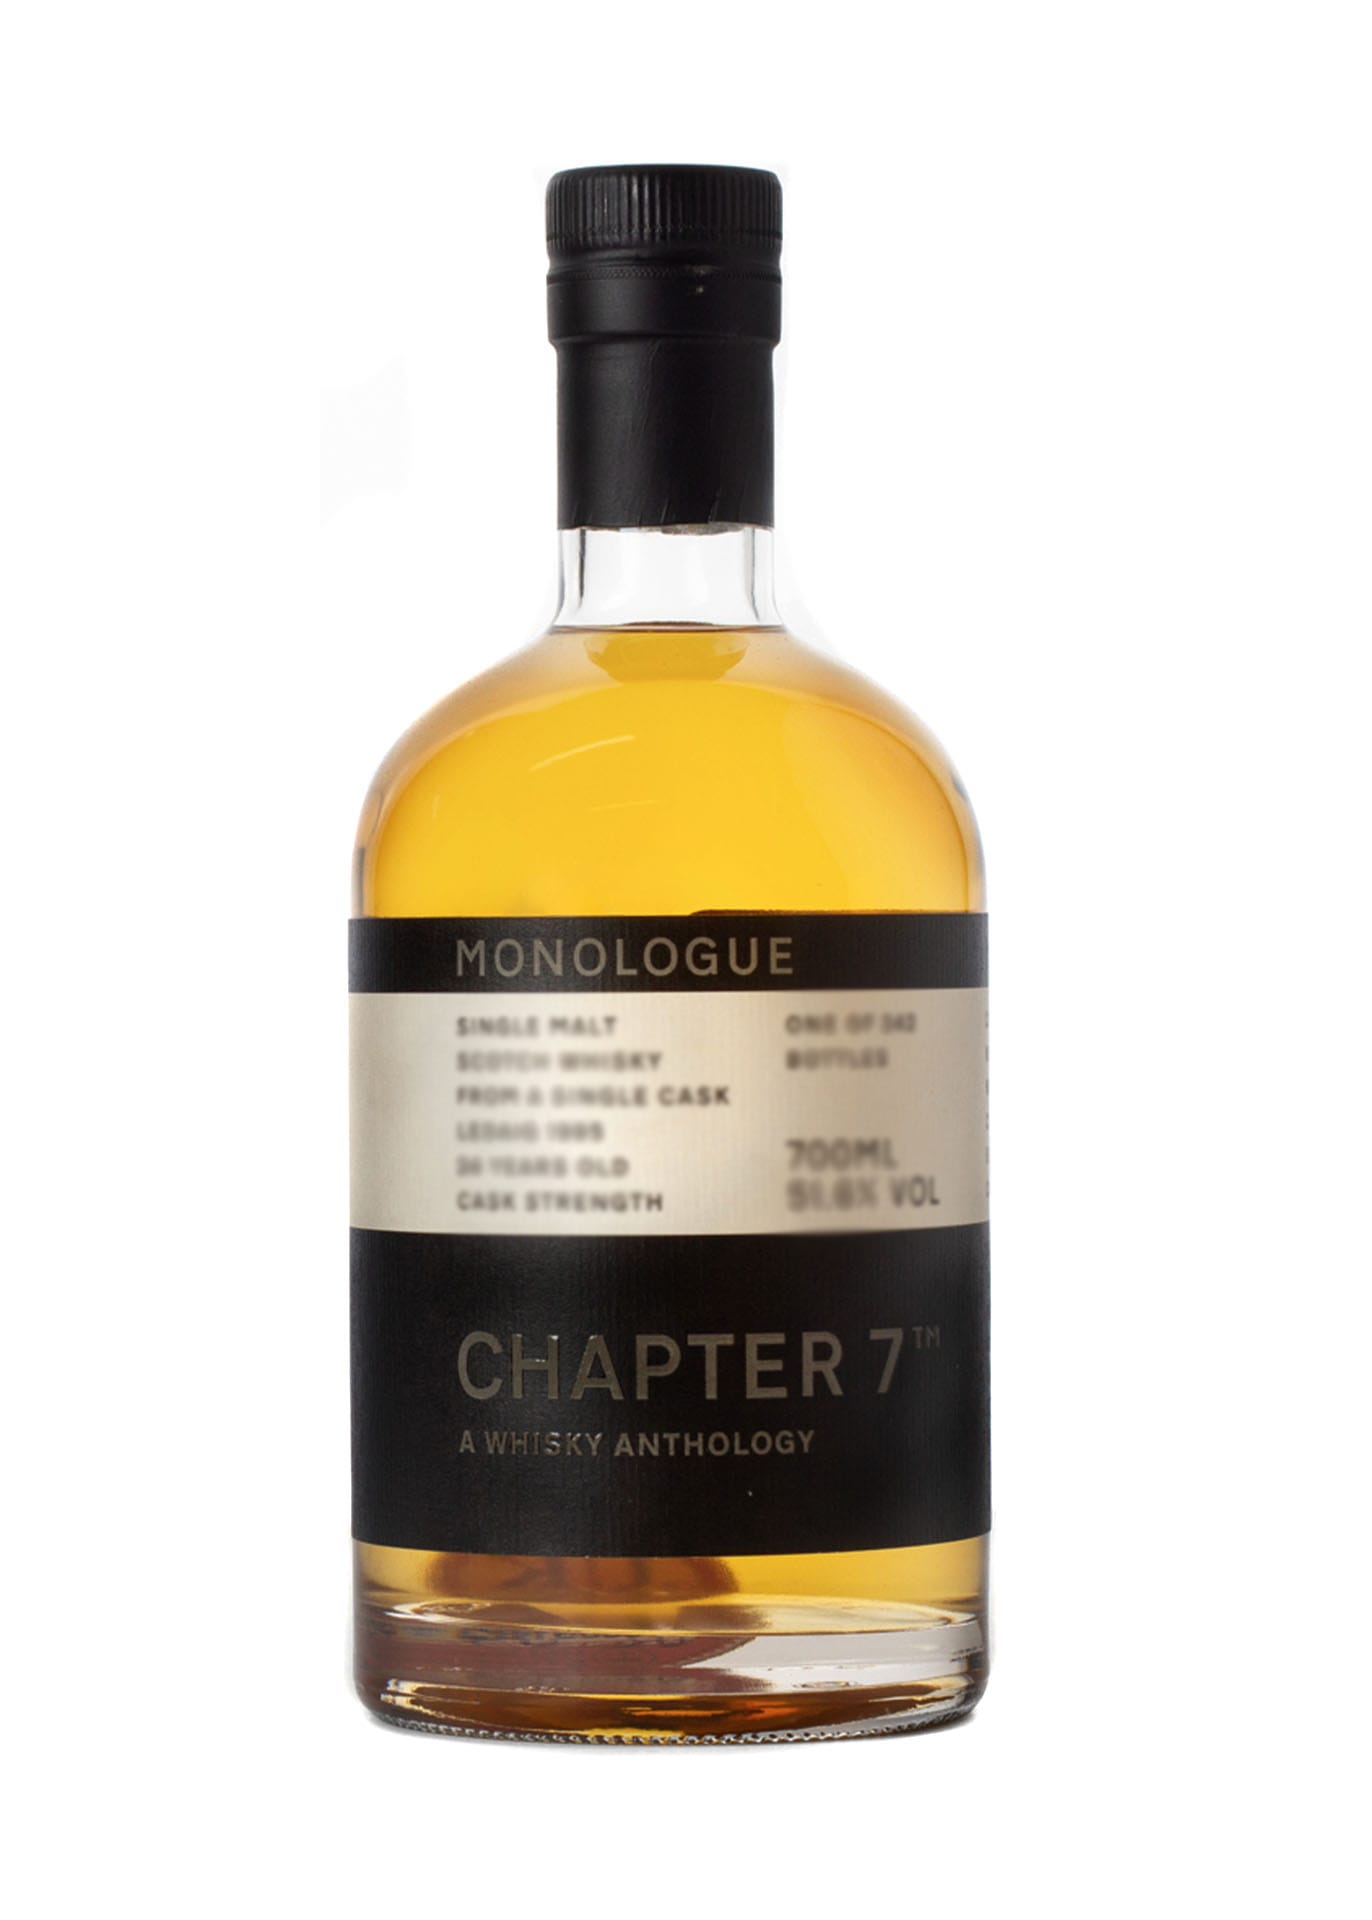 Chapter 7 Whisky: Monologue Miltonduff 21 Year Old Single Malt Scotch